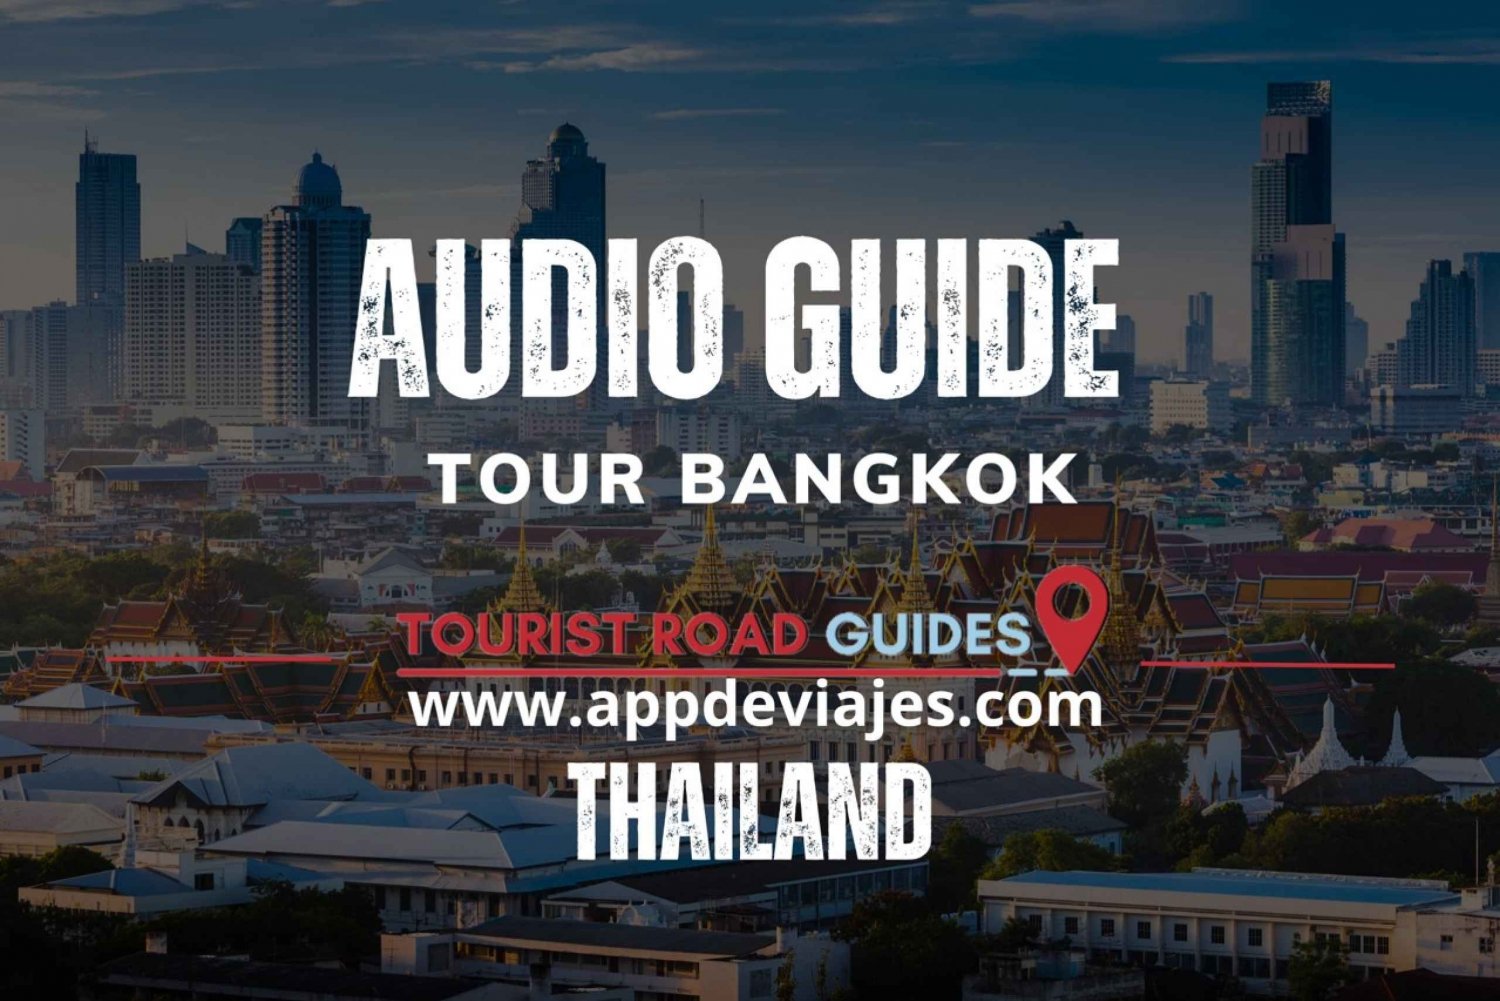 App self-guided: Tour Bangkok, Thailand